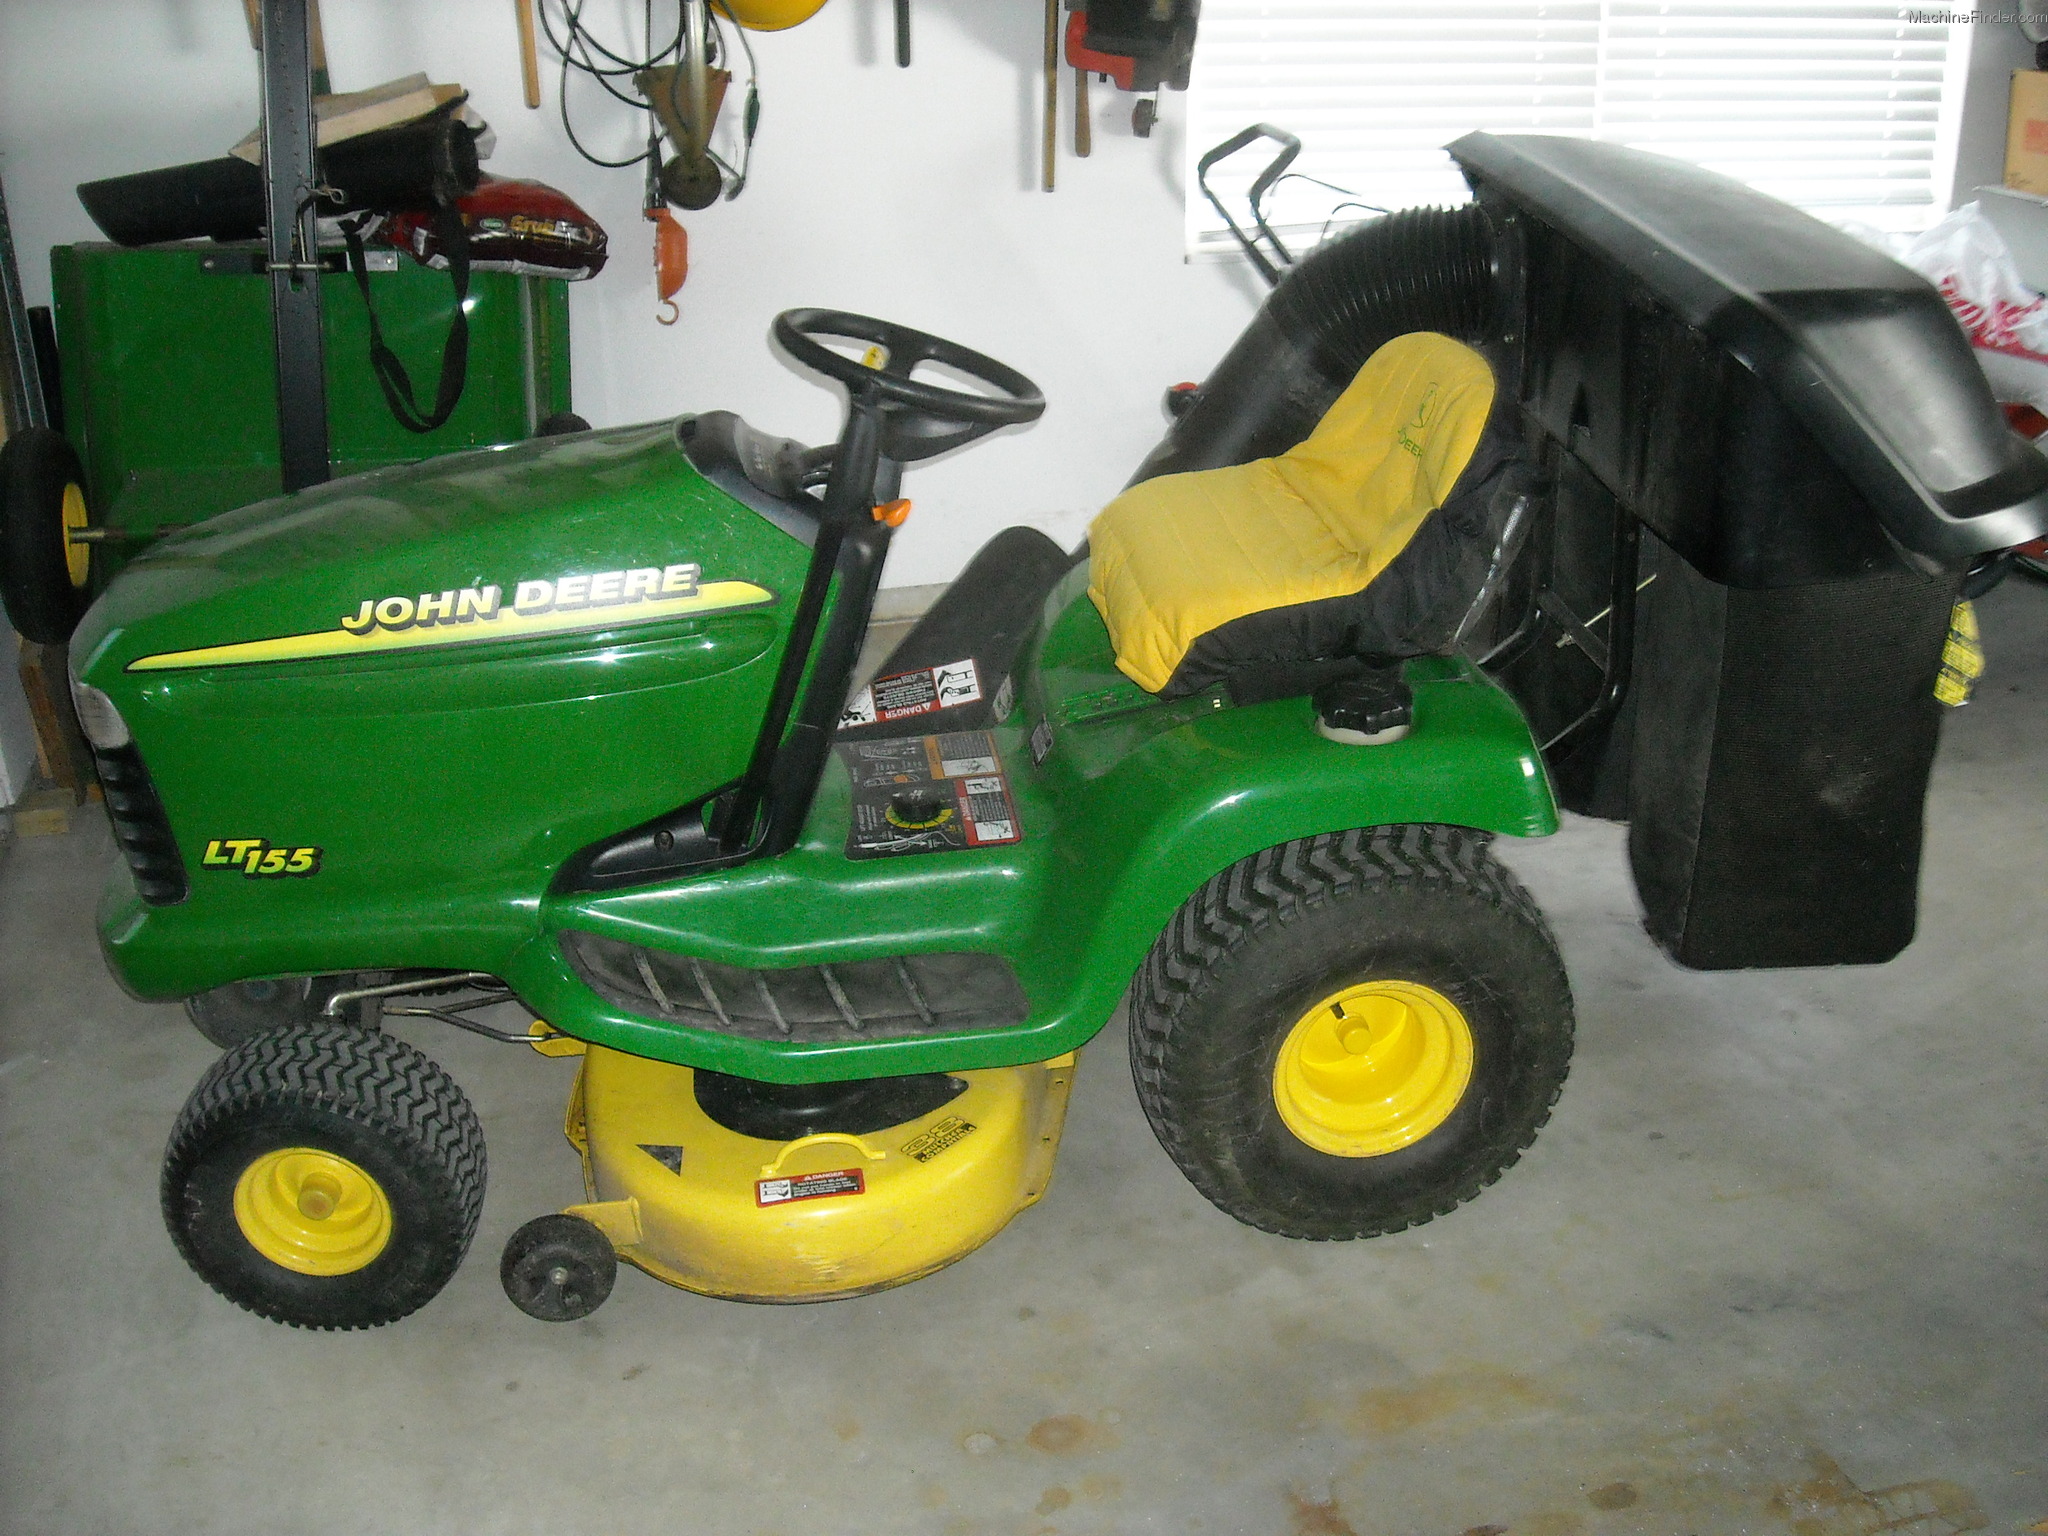 2001 John Deere Lt155 Lawn And Garden And Commercial Mowing John Deere Machinefinder 3521